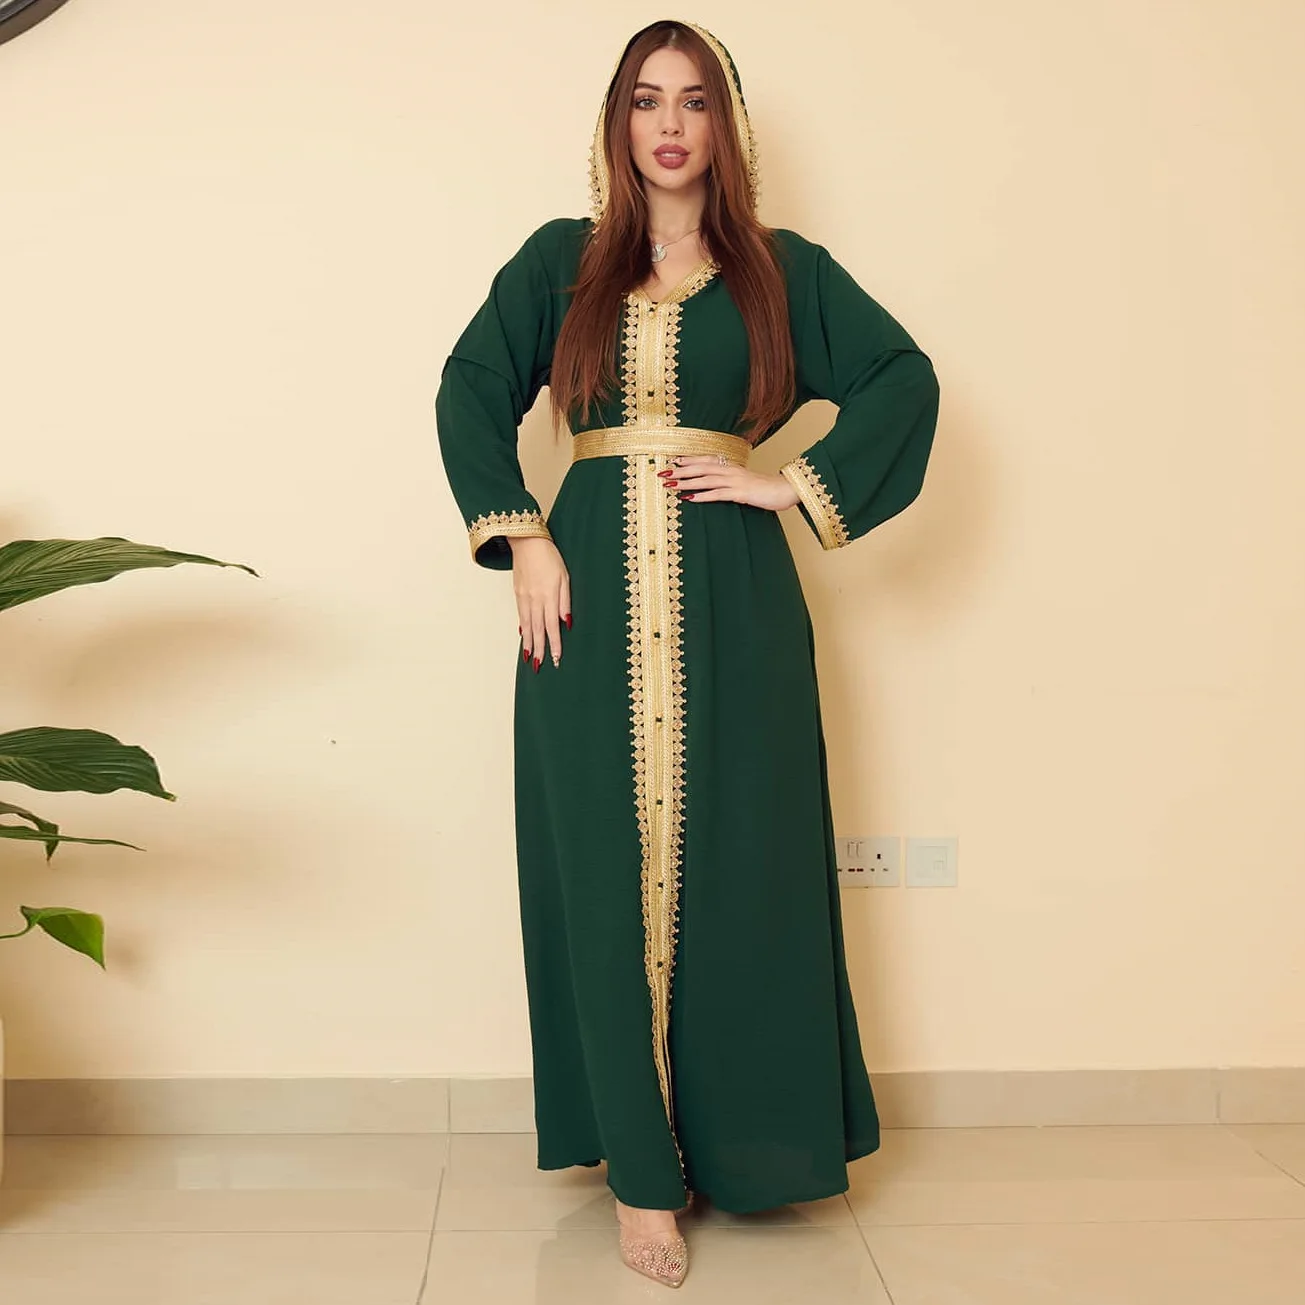 Длинное платье-макси для женщин в мусульманском стиле, Средний Восток, льняное зеленое, женская одежда с капюшоном в стиле загара, большая ю...